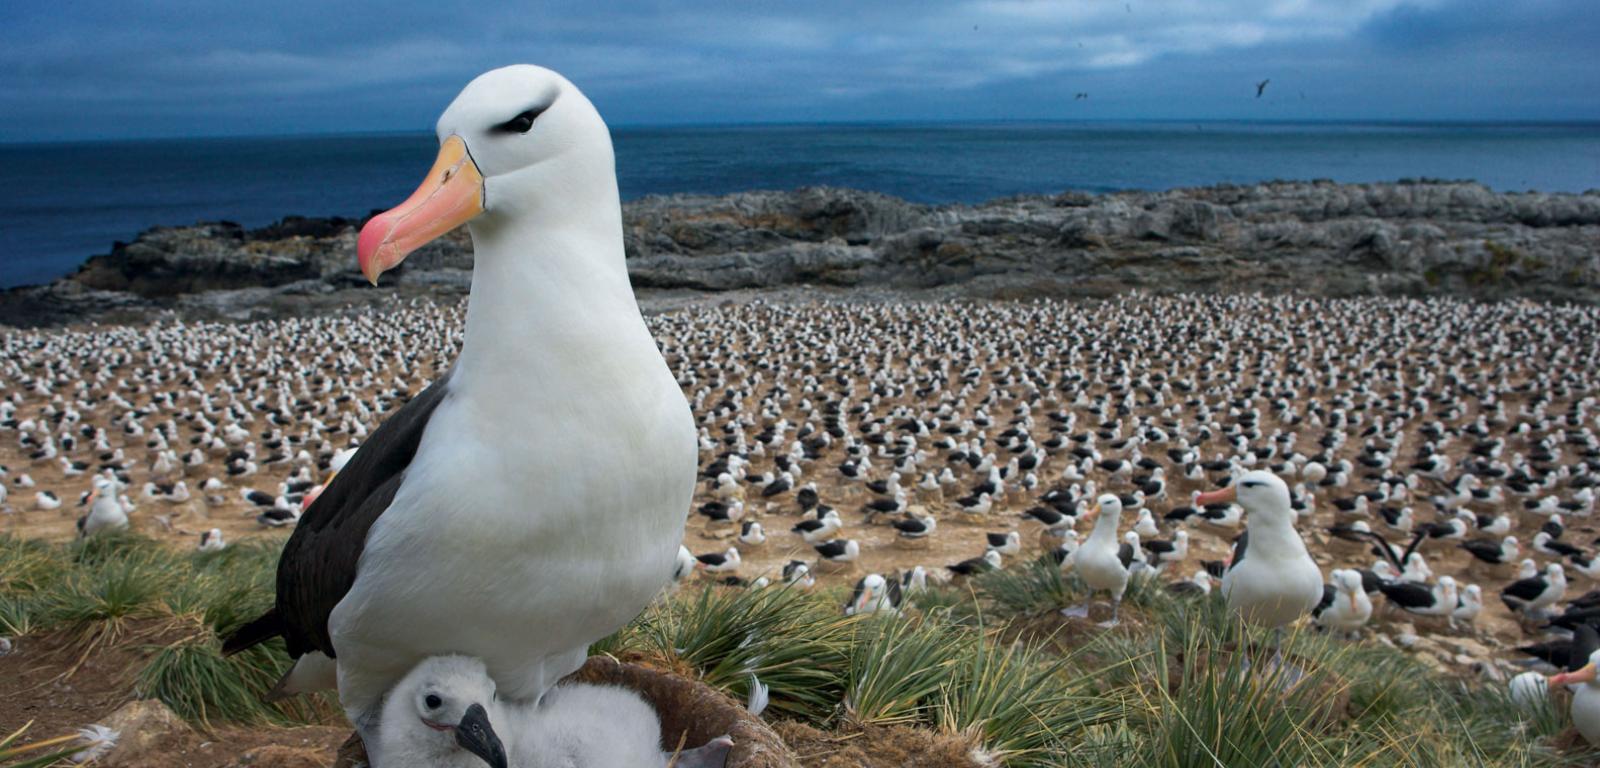 Albatrosy czarnobrewe zamieszkują głównie rejon Oceanu Południowego. Gniazdują na wybrzeżach wysp, a ich najliczniejsze kolonie znajdują się na Falklandach.